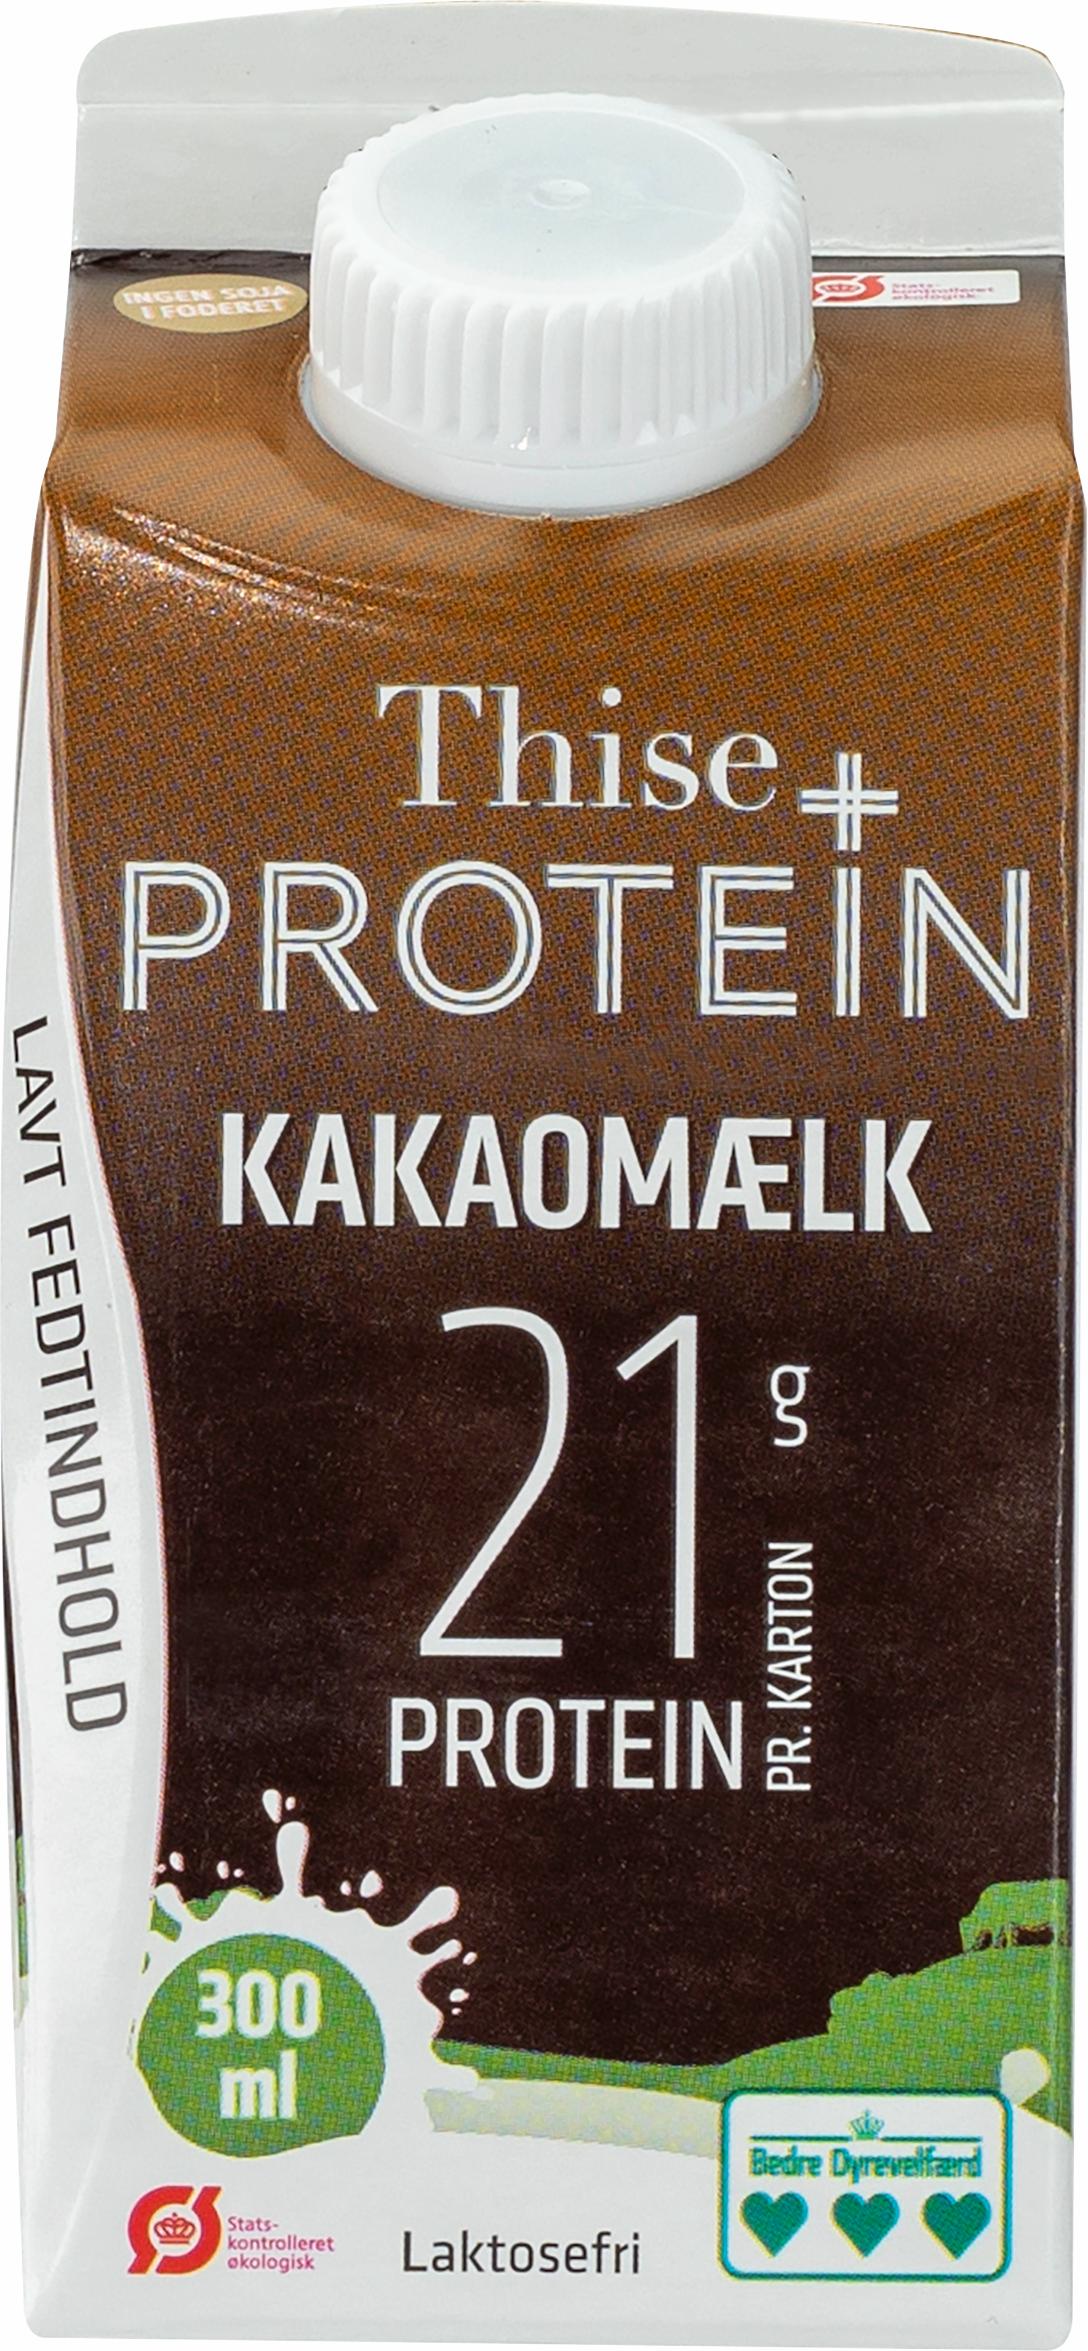 Thise protein+ kakaomælk 300 ml